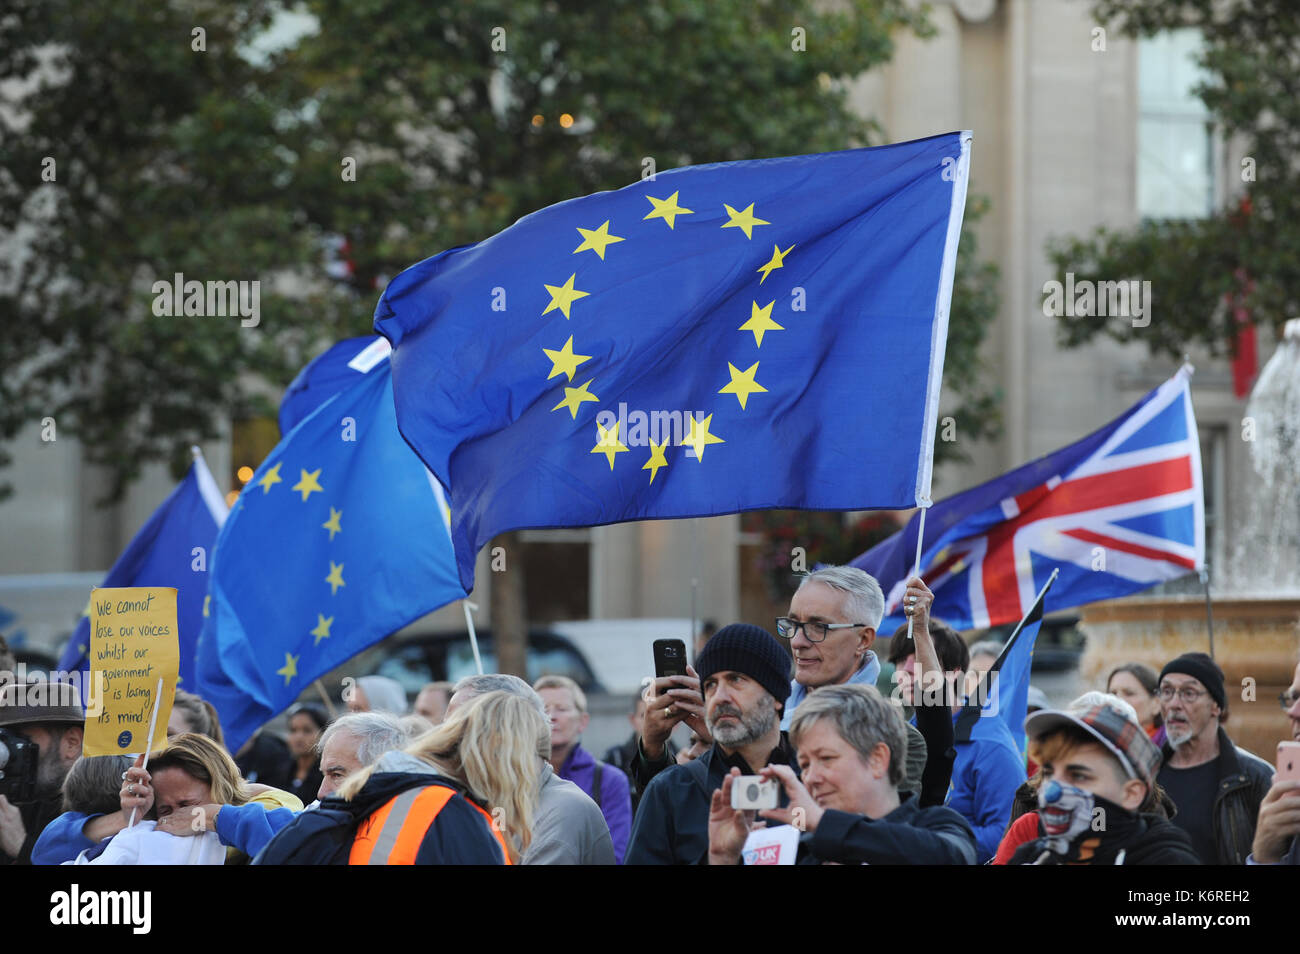 Londra, Regno Unito. Xiii Sep, 2017. I tifosi sono raffigurate tenendo diverse bandiere dell'UE e una bandiera del Regno Unito durante i cittadini" Rally come una giornata di azione per cittadini dell' Unione europea nel Regno Unito e per i cittadini britannici in Europa. Ai cittadini il Rally in Trafalgar Square è stato creato per celebrare la vita di tutti i cittadini UE che risiedono nel Regno Unito & i cittadini britannici in Europa e sostenere la loro semplice chiedere di conservare i loro diritti attuali invariata dopo Brexit. Foto Stock